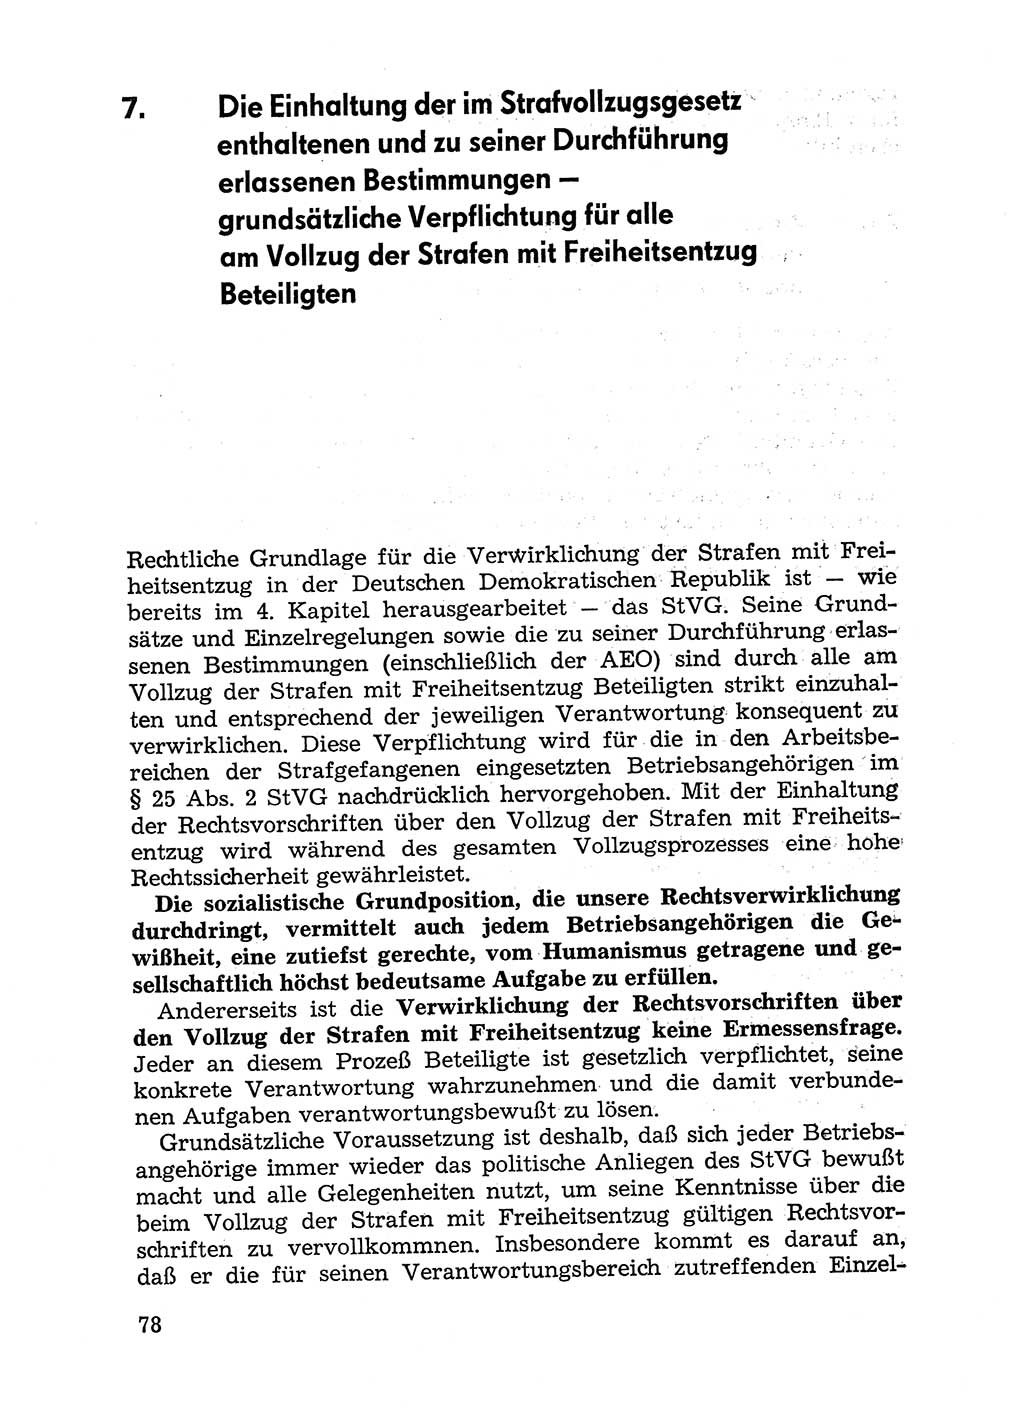 Handbuch für Betriebsangehörige, Abteilung Strafvollzug (SV) [Ministerium des Innern (MdI) Deutsche Demokratische Republik (DDR)] 1981, Seite 78 (Hb. BA Abt. SV MdI DDR 1981, S. 78)